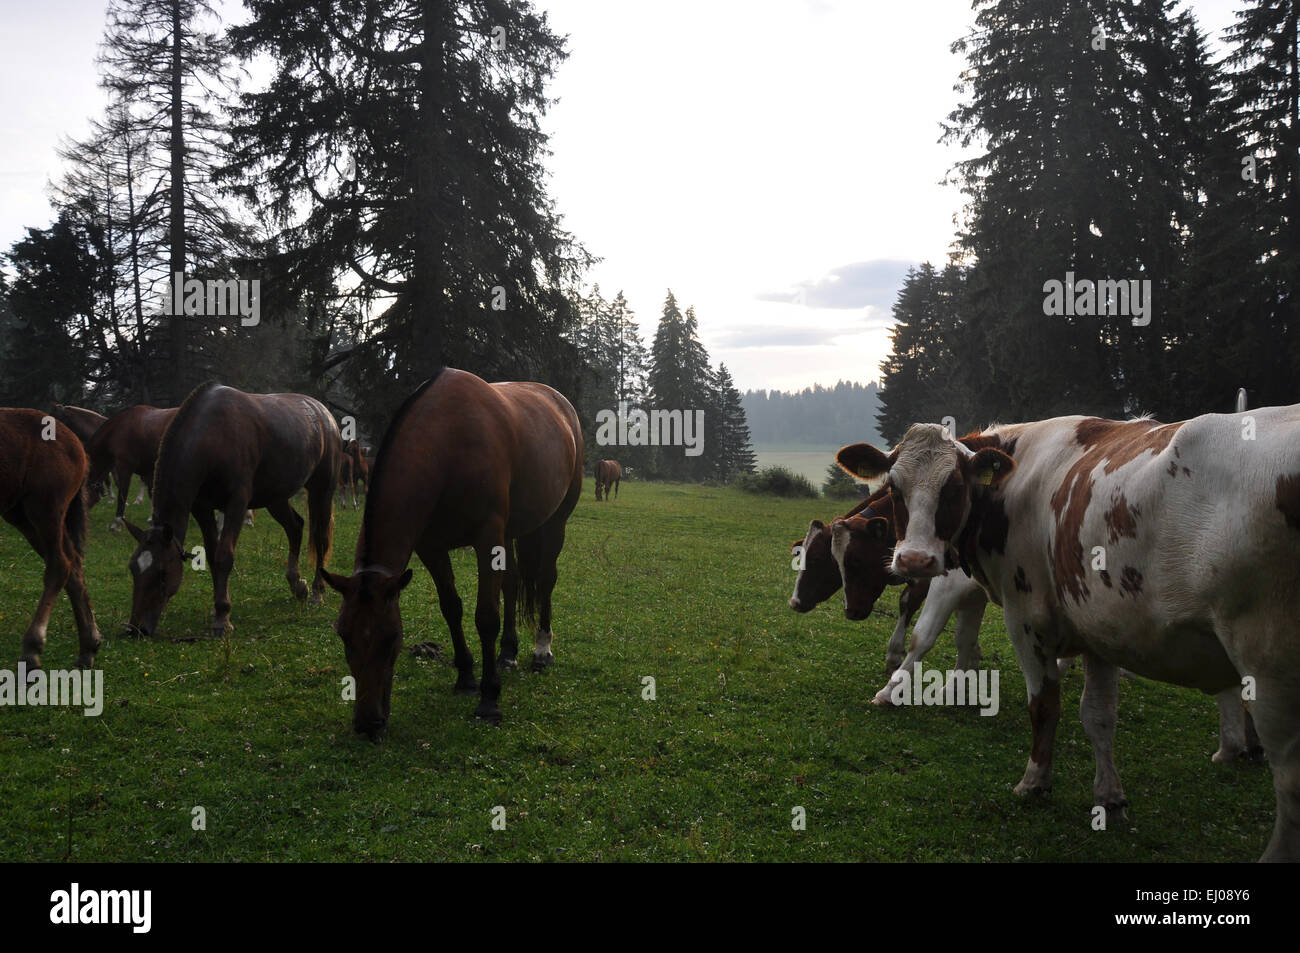 Suiza, Europa, Jura, Freiberge, Franches Montagnes, pastos, sauce, caballos, ganado, vacas Foto de stock